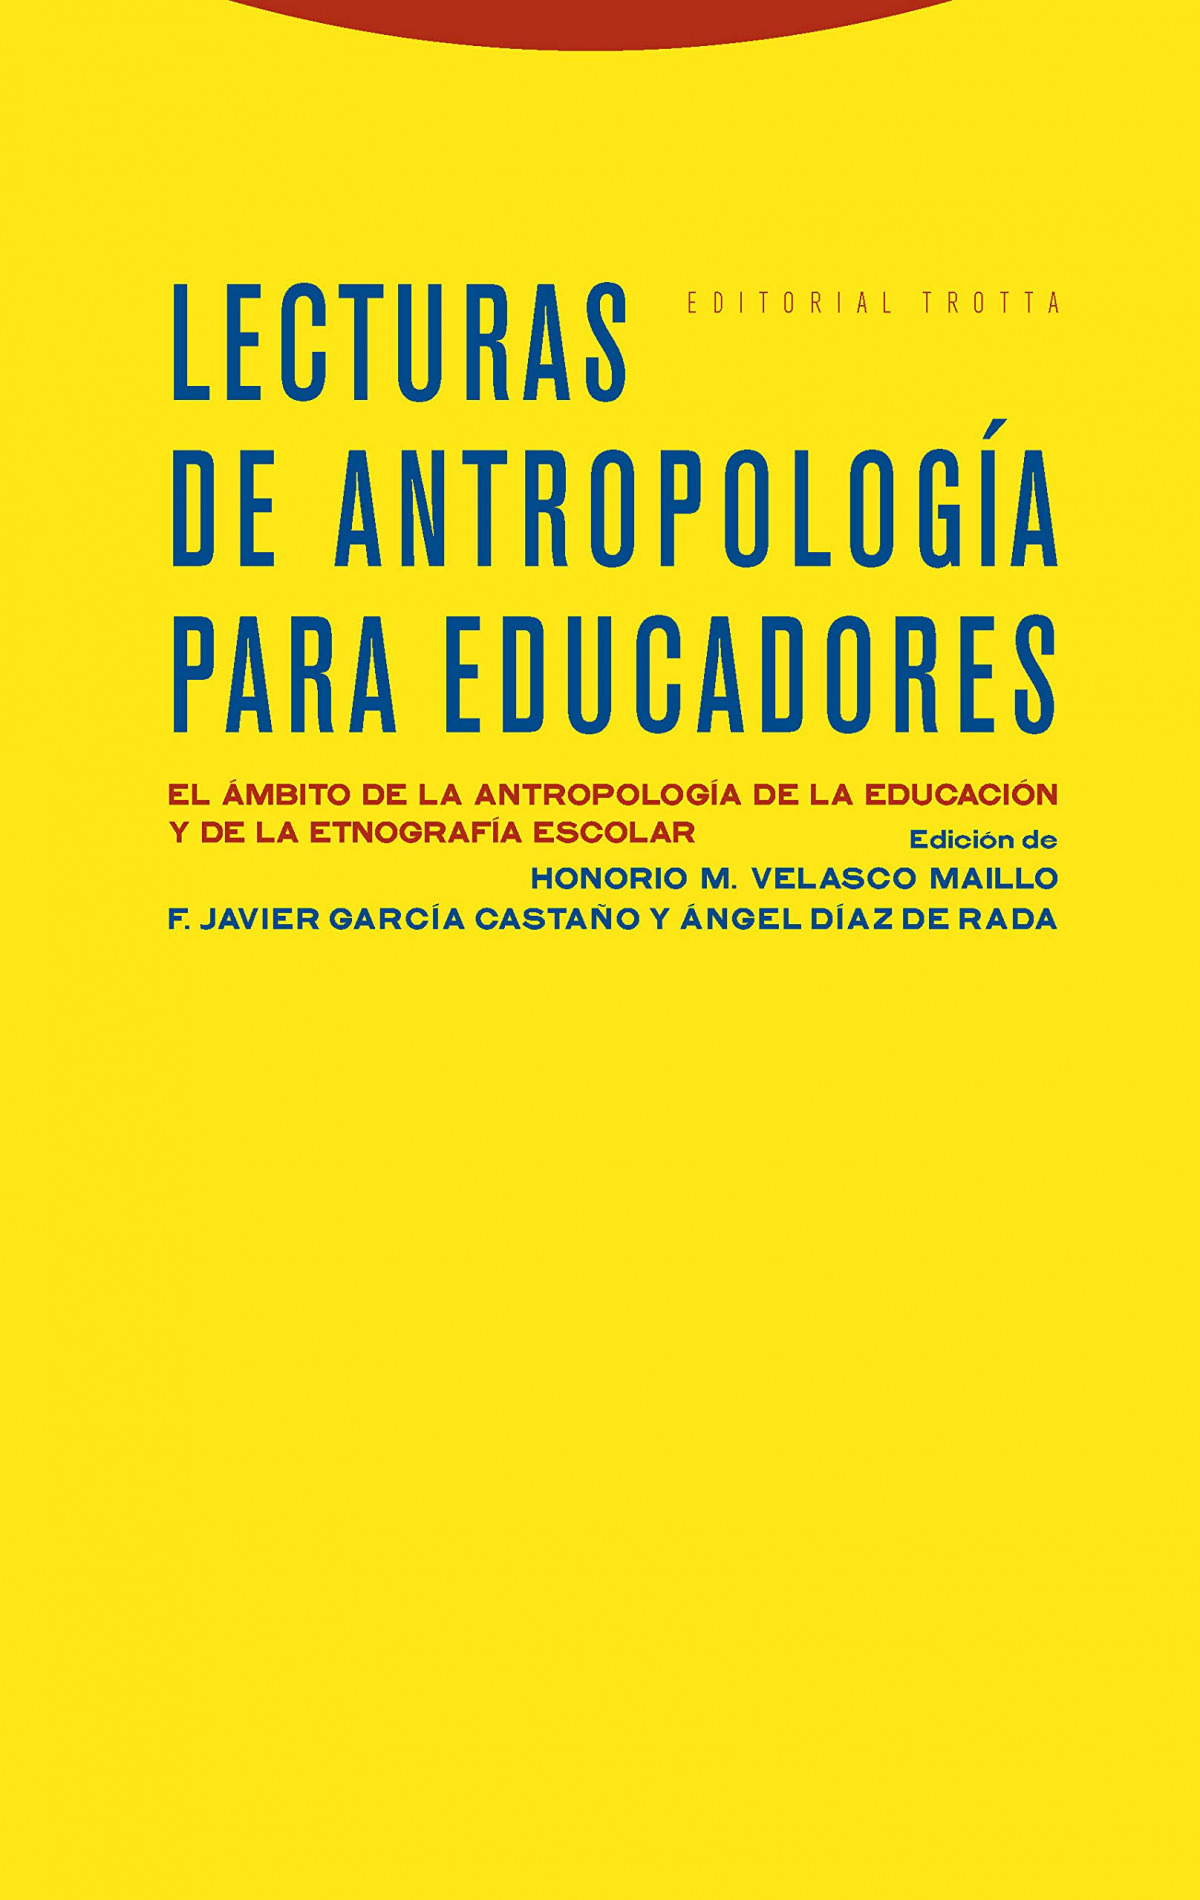 Lecturas antropología educadores - Velasco Maillo, Honorio